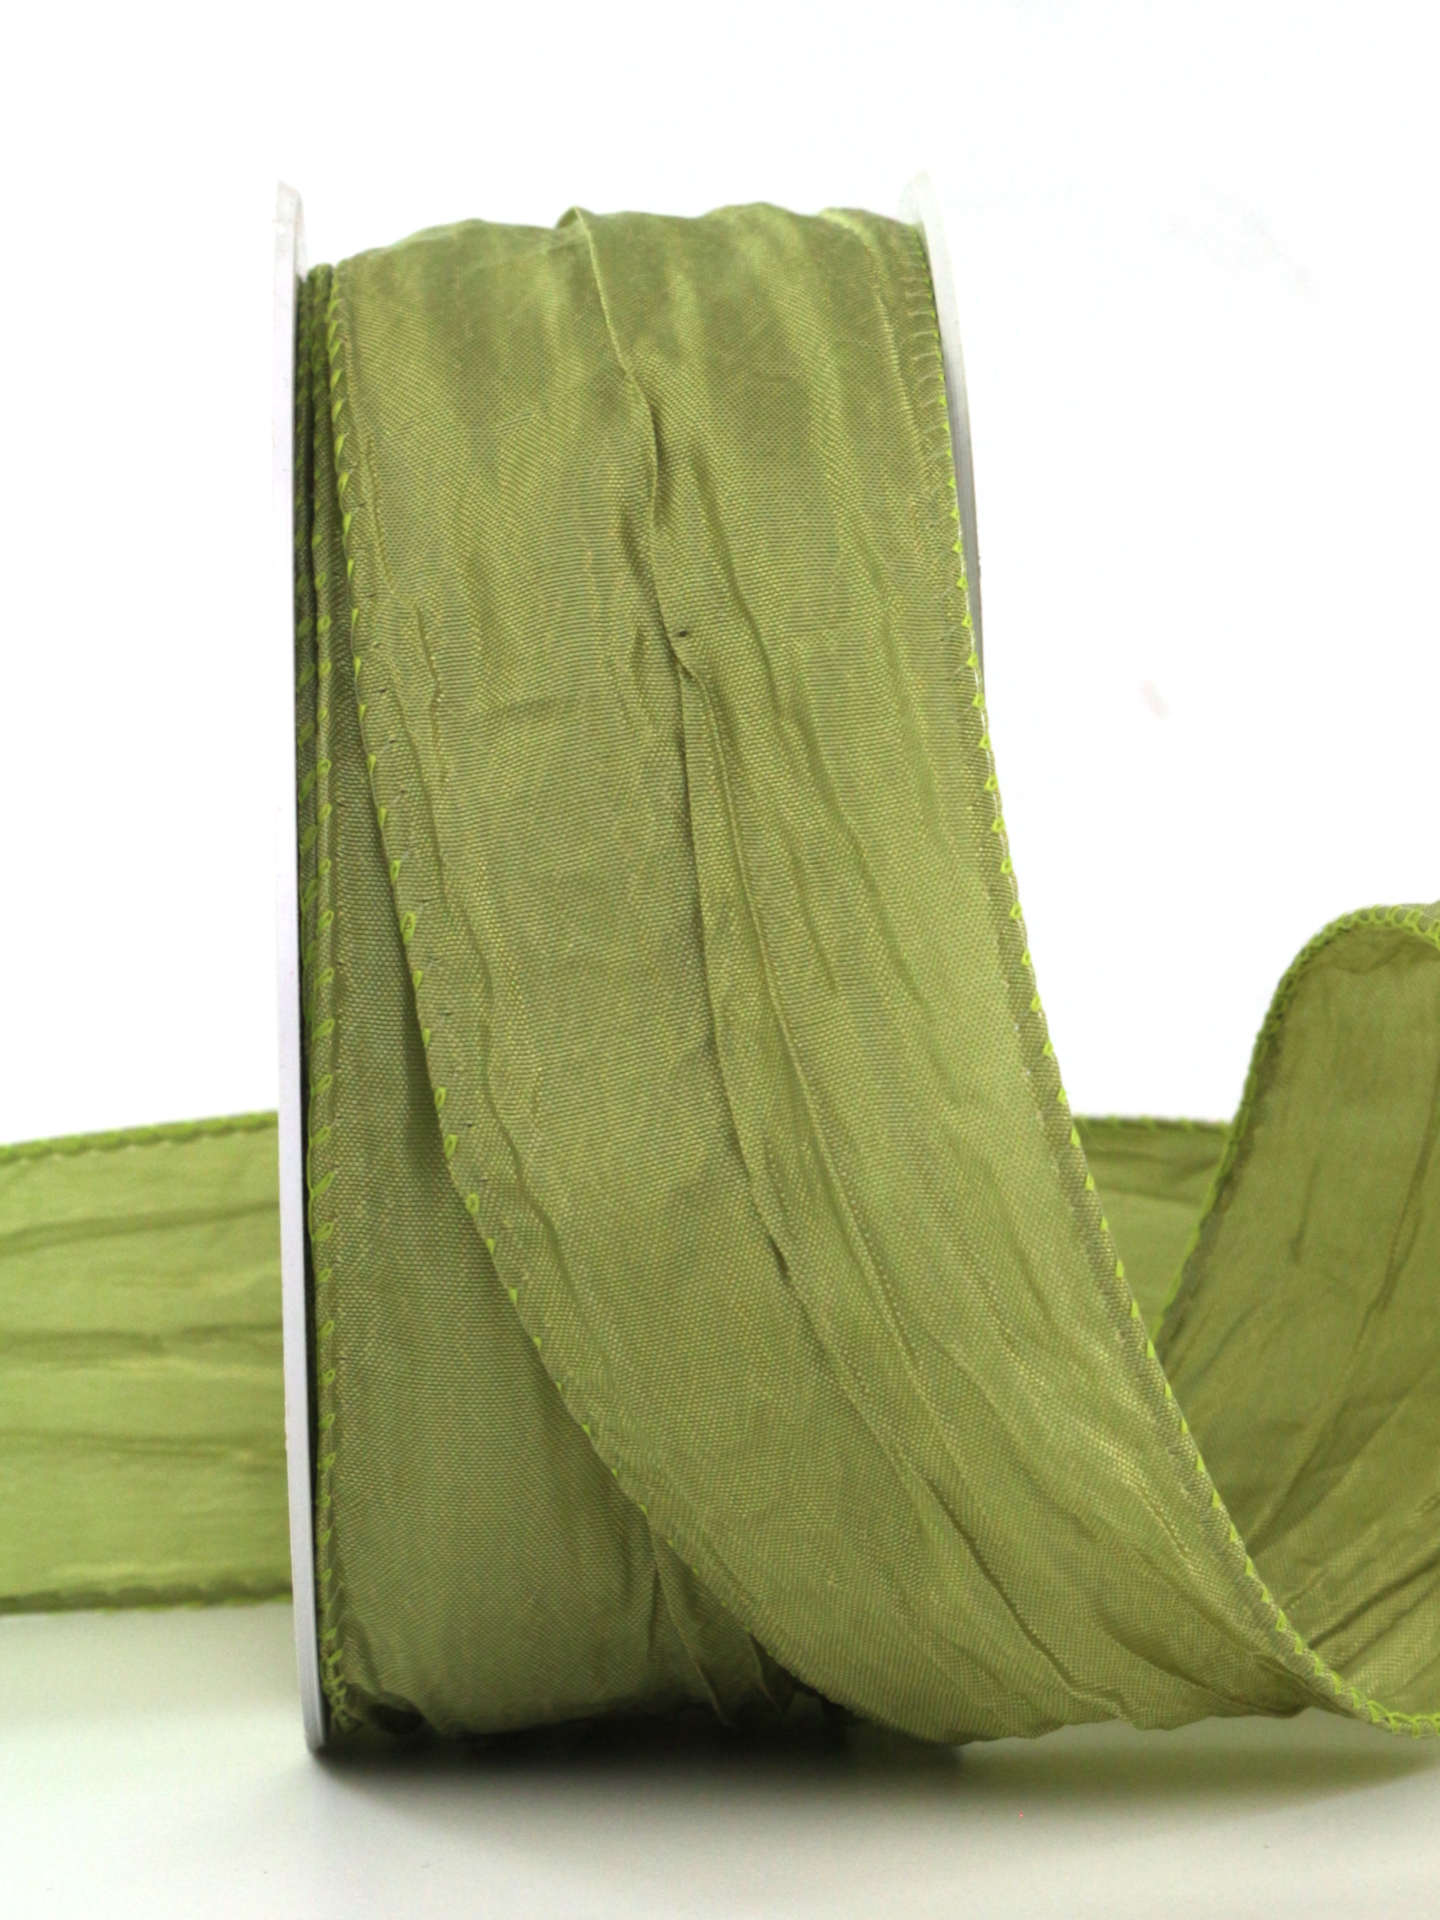 Crash-Stoffband, grün, 50 mm breit, 10 m Rolle - geschenkband, geschenkband-einfarbig, dekoband